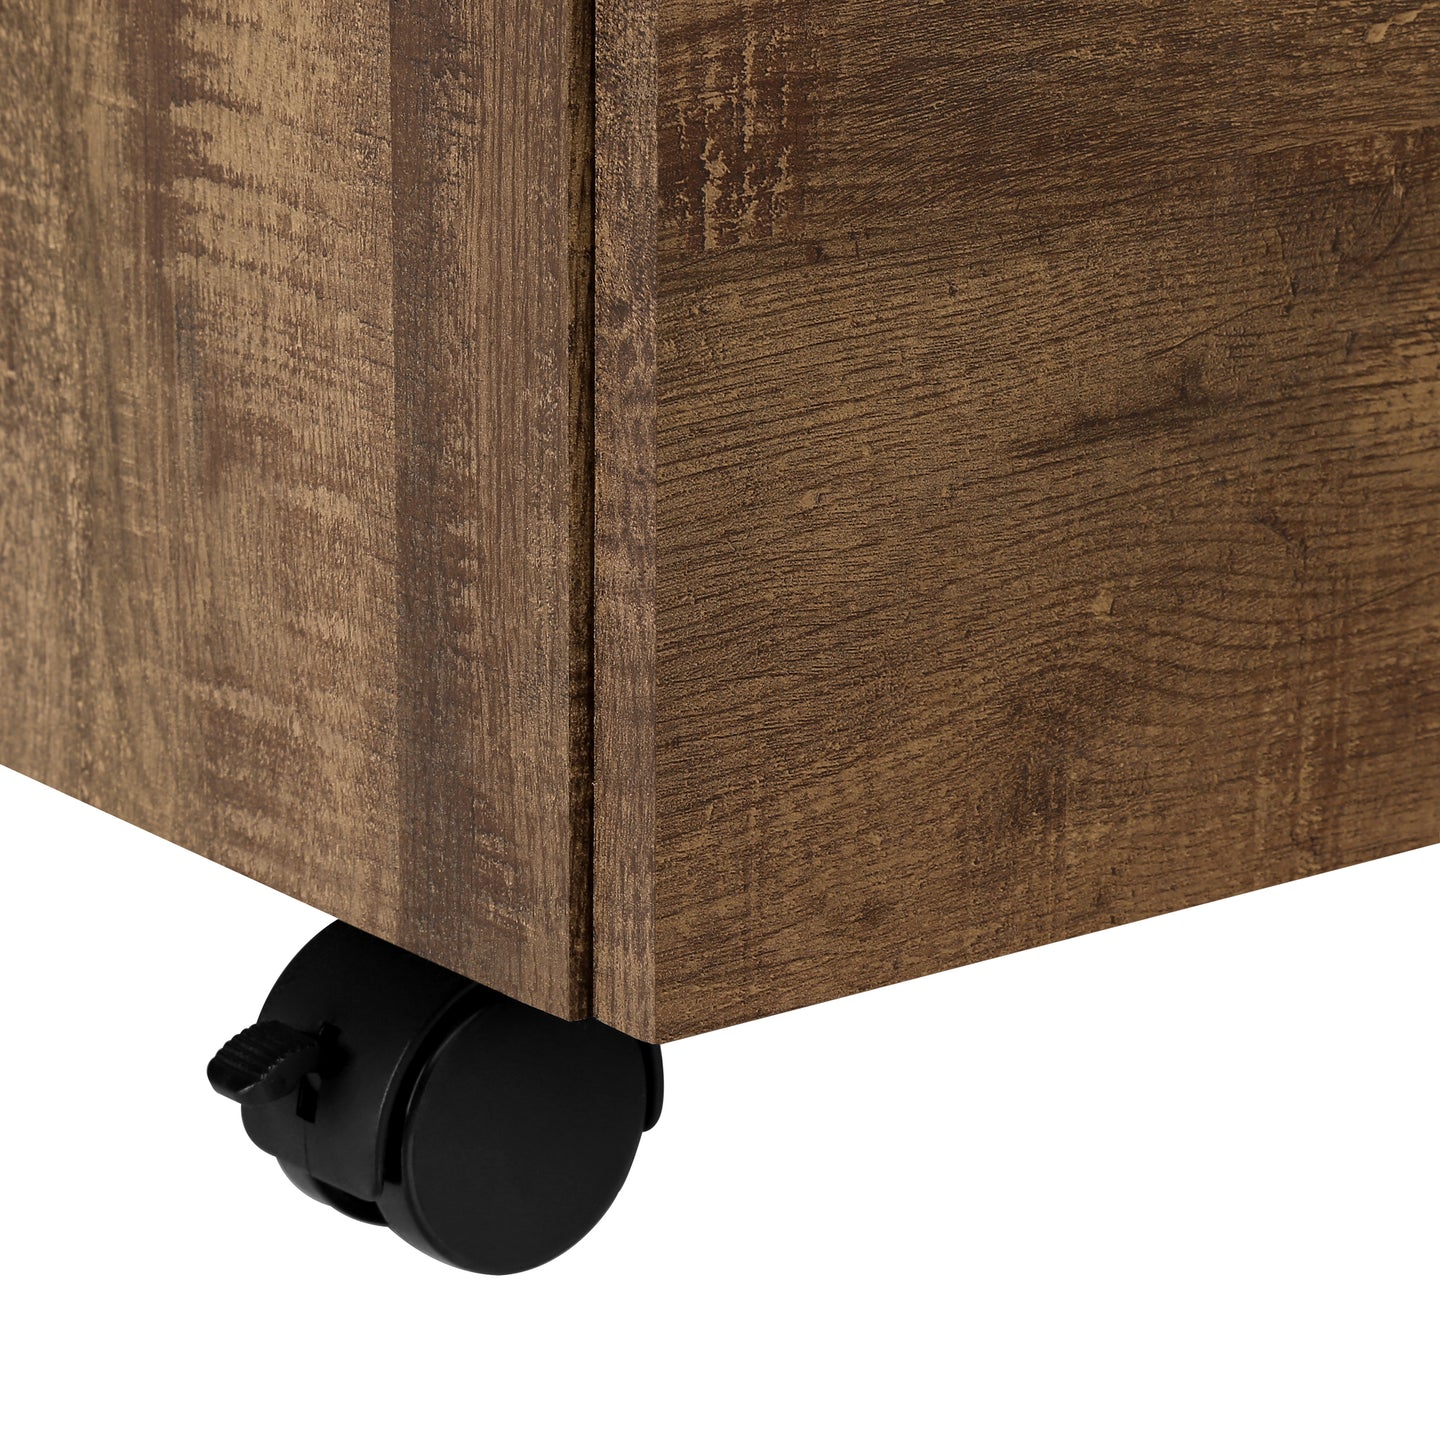 I 7400 Filing Cabinet - 3 Drawer / Brown Reclaimed Wood/ Castors - Furniture Depot